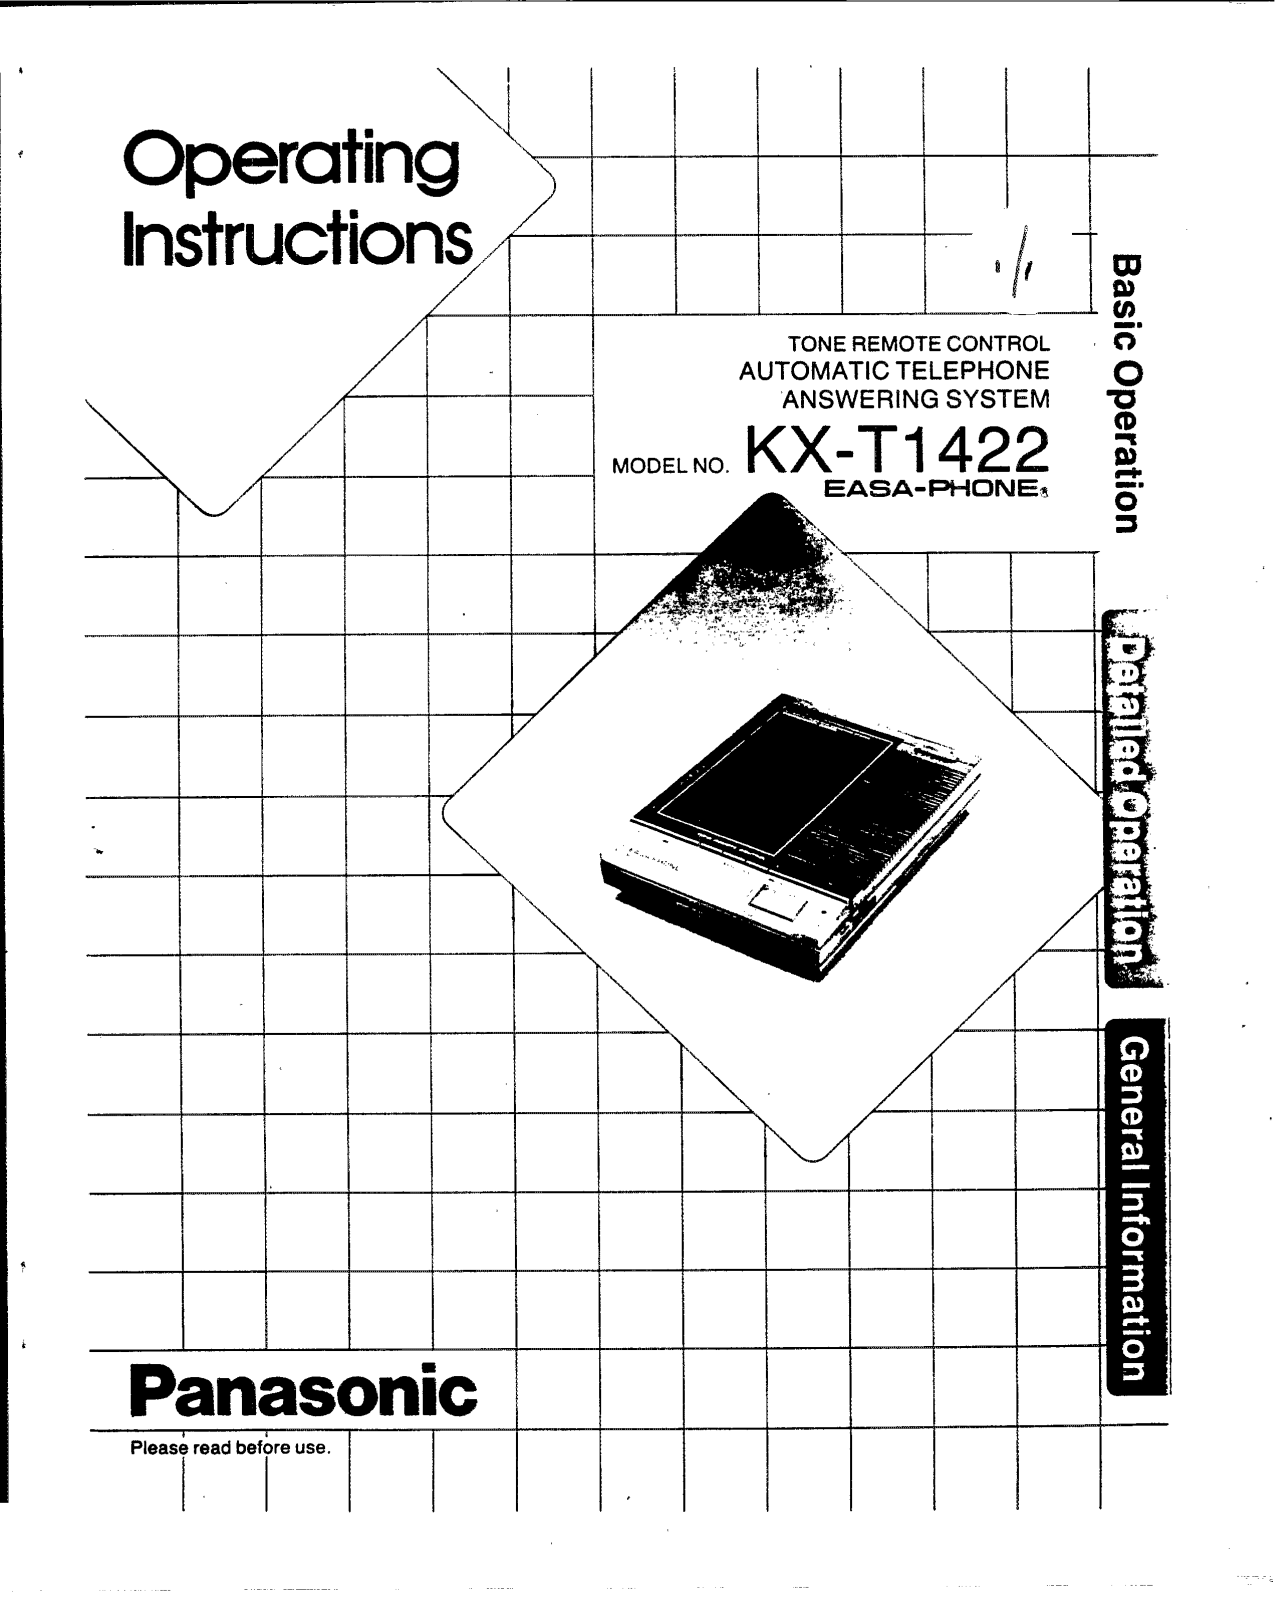 Panasonic kx-t1422 Operation Manual